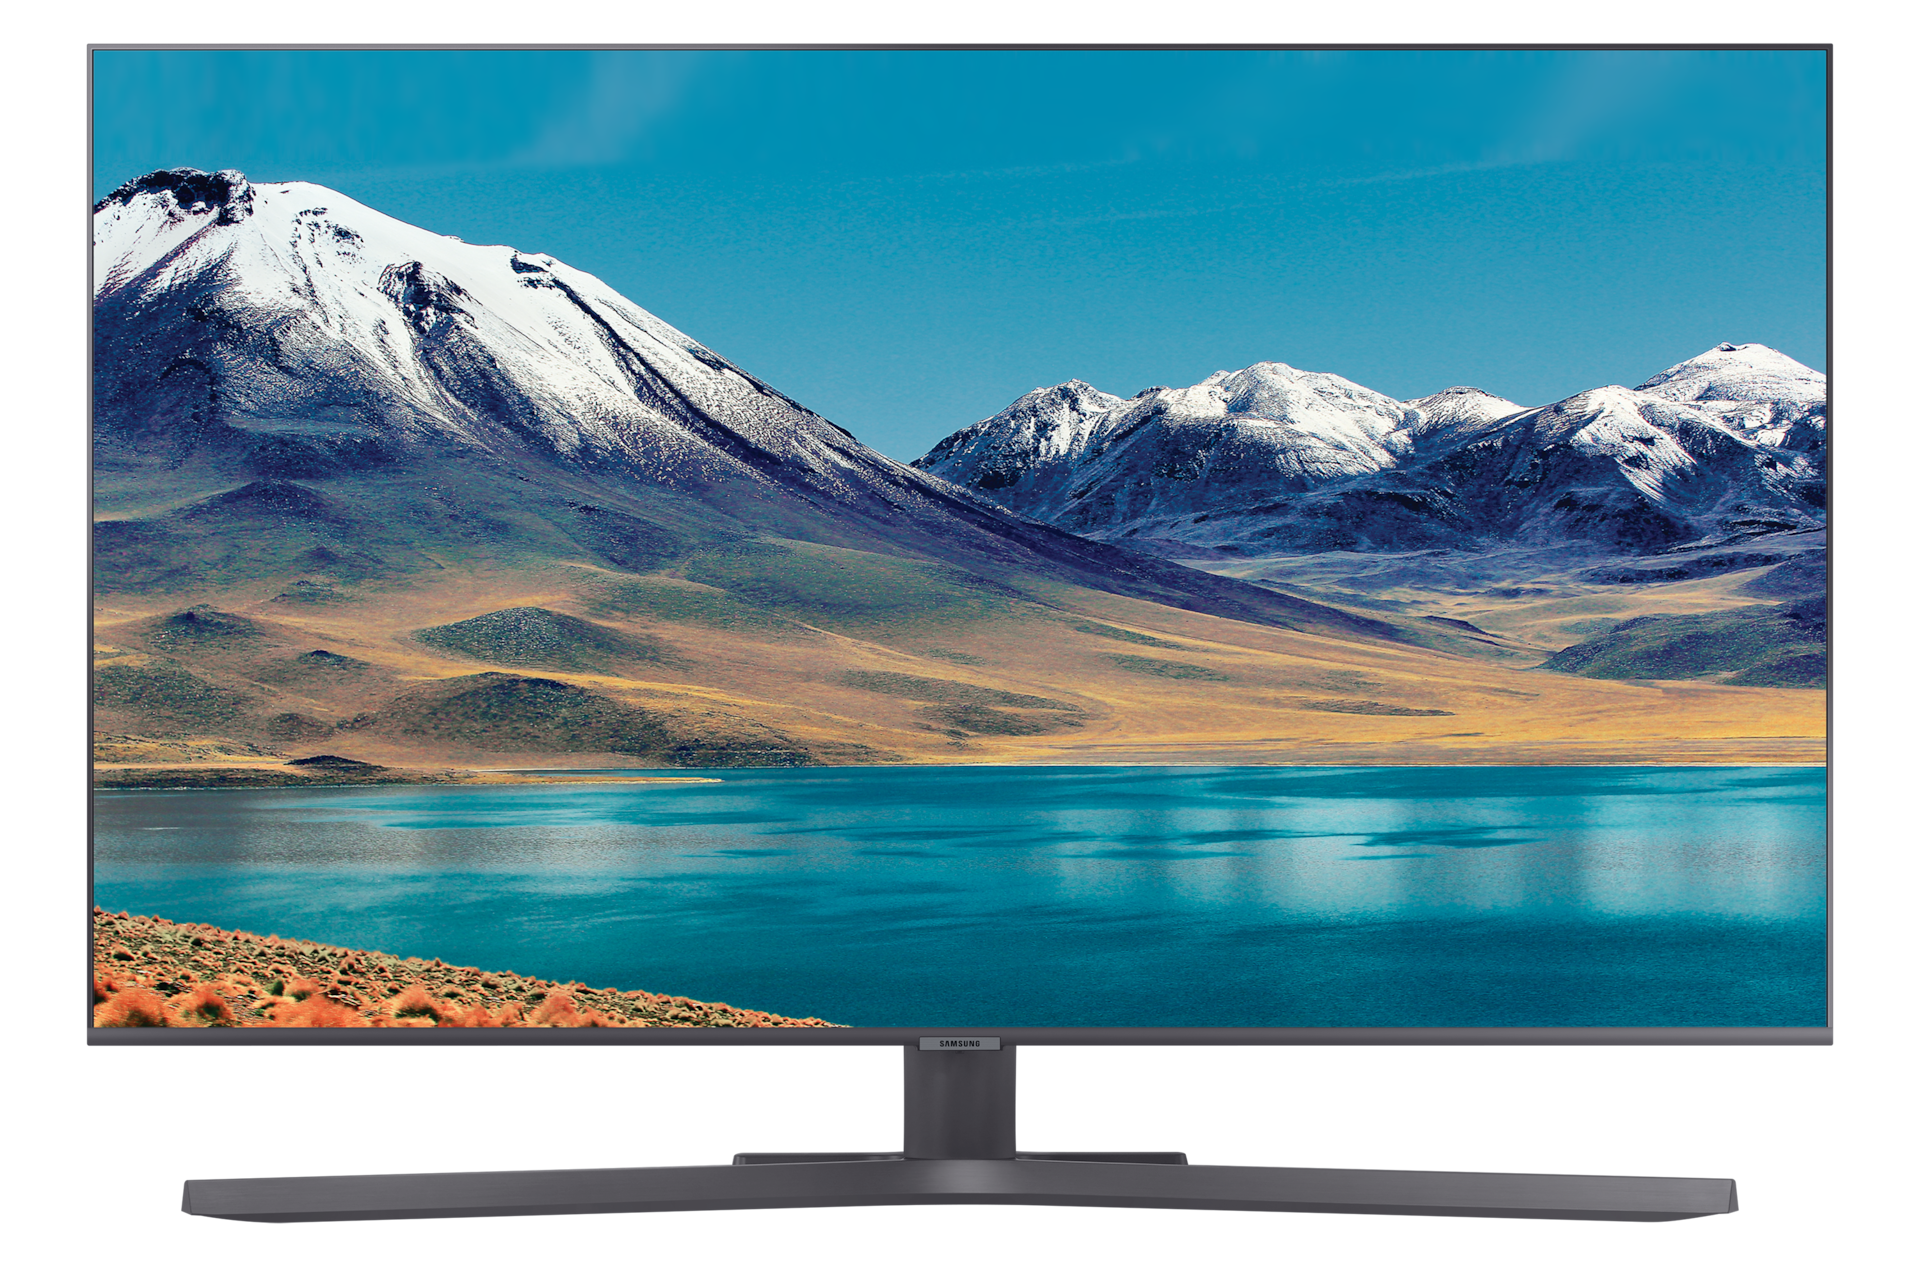 ᐅ Televisor Samsung de 50 pulgadas con tecnología LED y Smart TV de Samsung, Monitors & Tvs en Gestión de Compras Empresariales S.A.S.